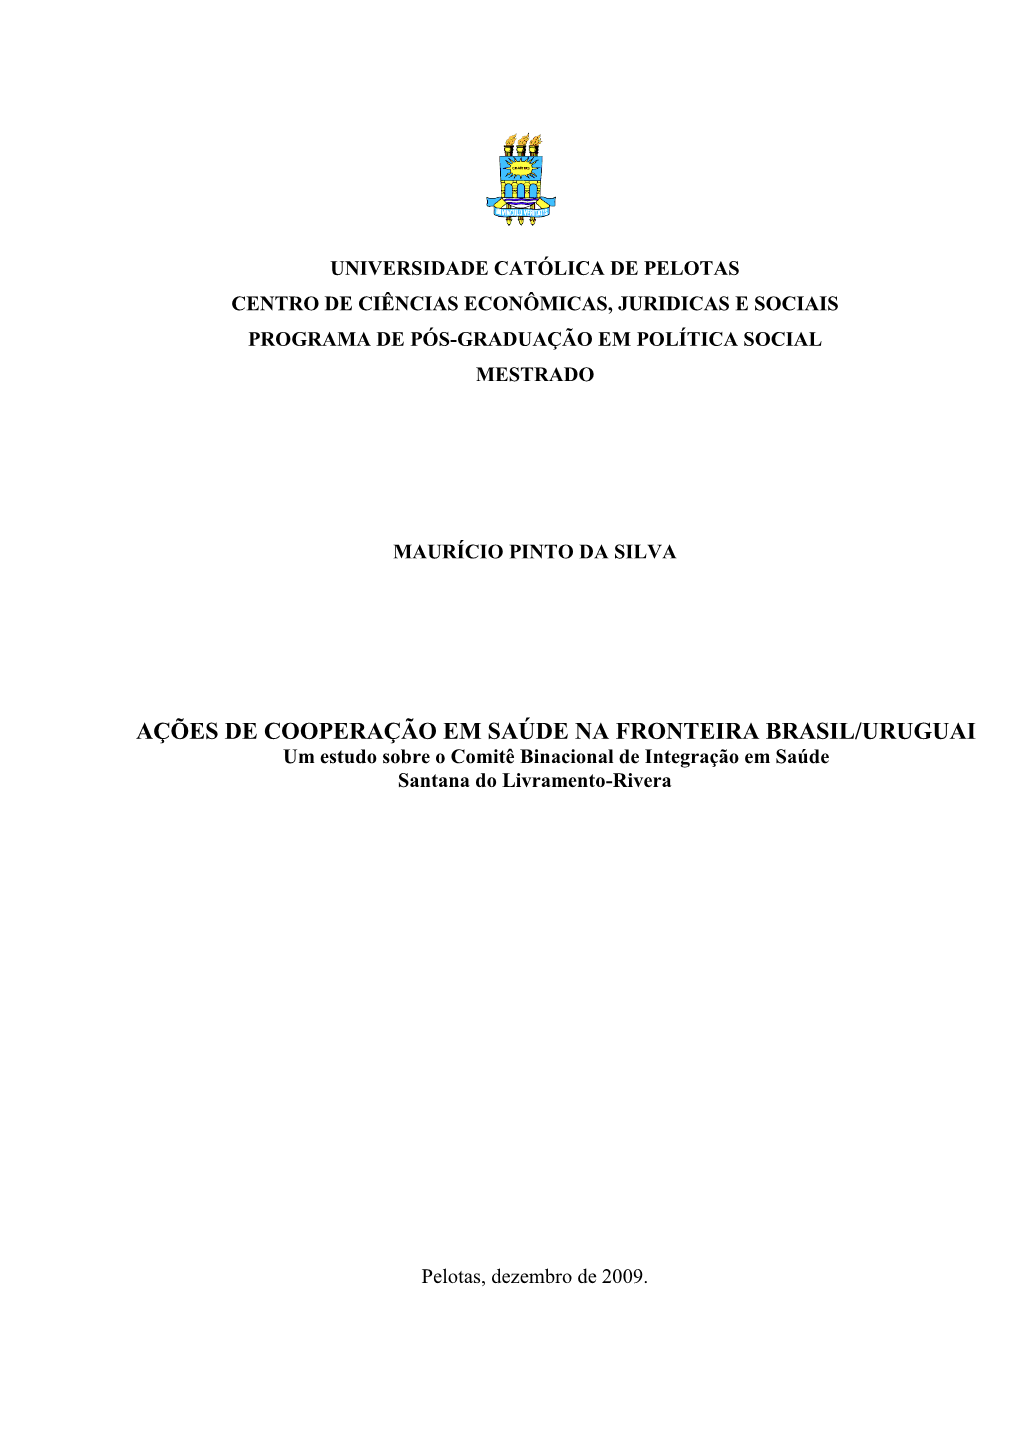 AÇÕES DE COOPERAÇÃO EM SAÚDE NA FRONTEIRA BRASIL/URUGUAI Um Estudo Sobre O Comitê Binacional De Integração Em Saúde Santana Do Livramento-Rivera